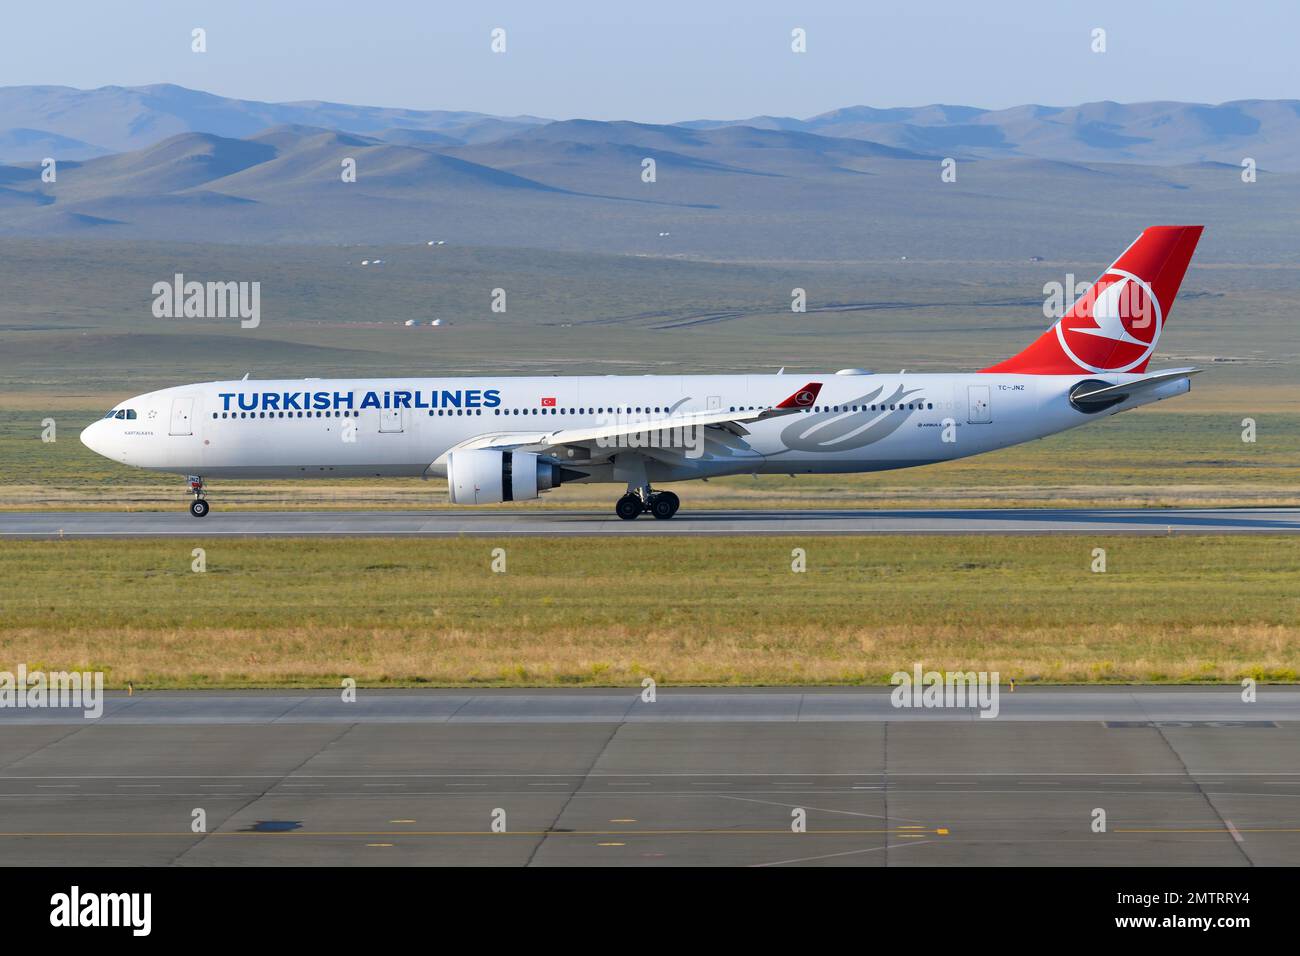 Avion Airbus A330 de Turkish Airlines à l'aéroport d'Oulan-Bator, Mongolie. Avion A330-300 atterrissage à l'aéroport international de Chinggis Khaan. Banque D'Images